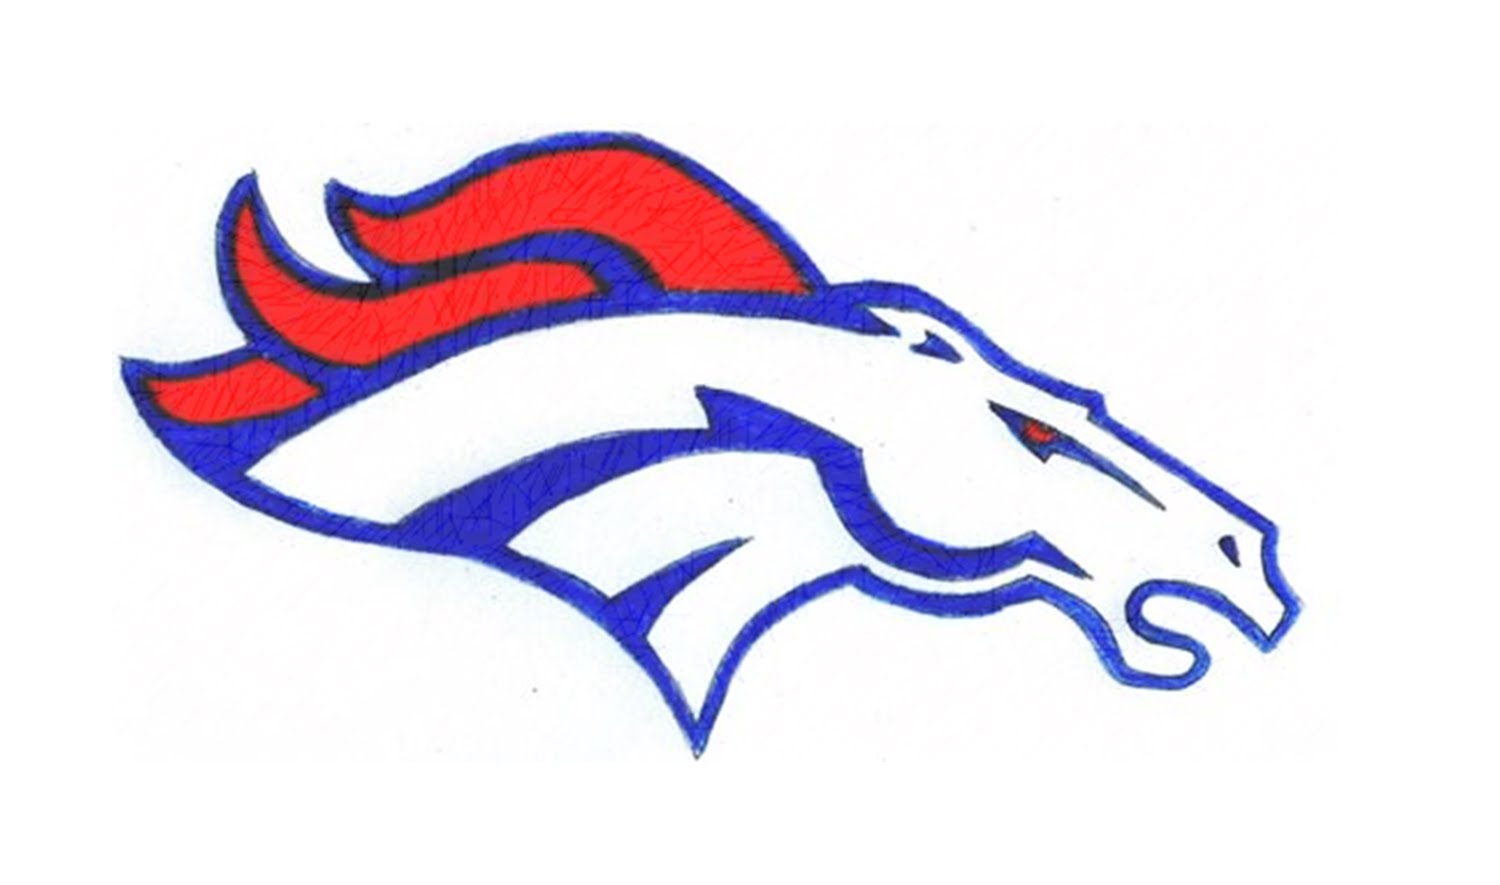 How to Draw the Denver Broncos Logo (NFL) - YouTube